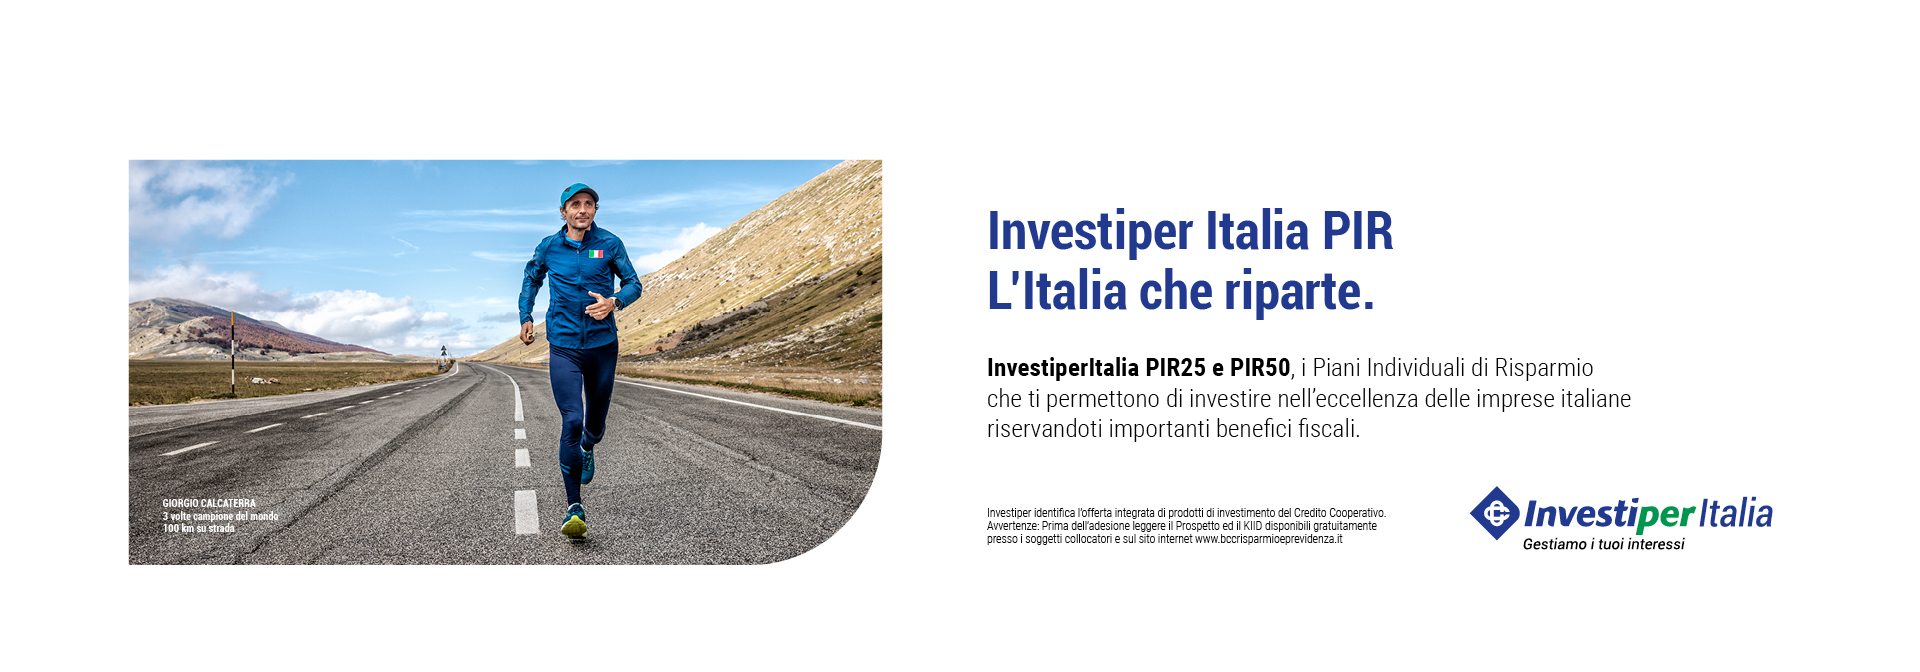 Investiper Italia PIR 2020